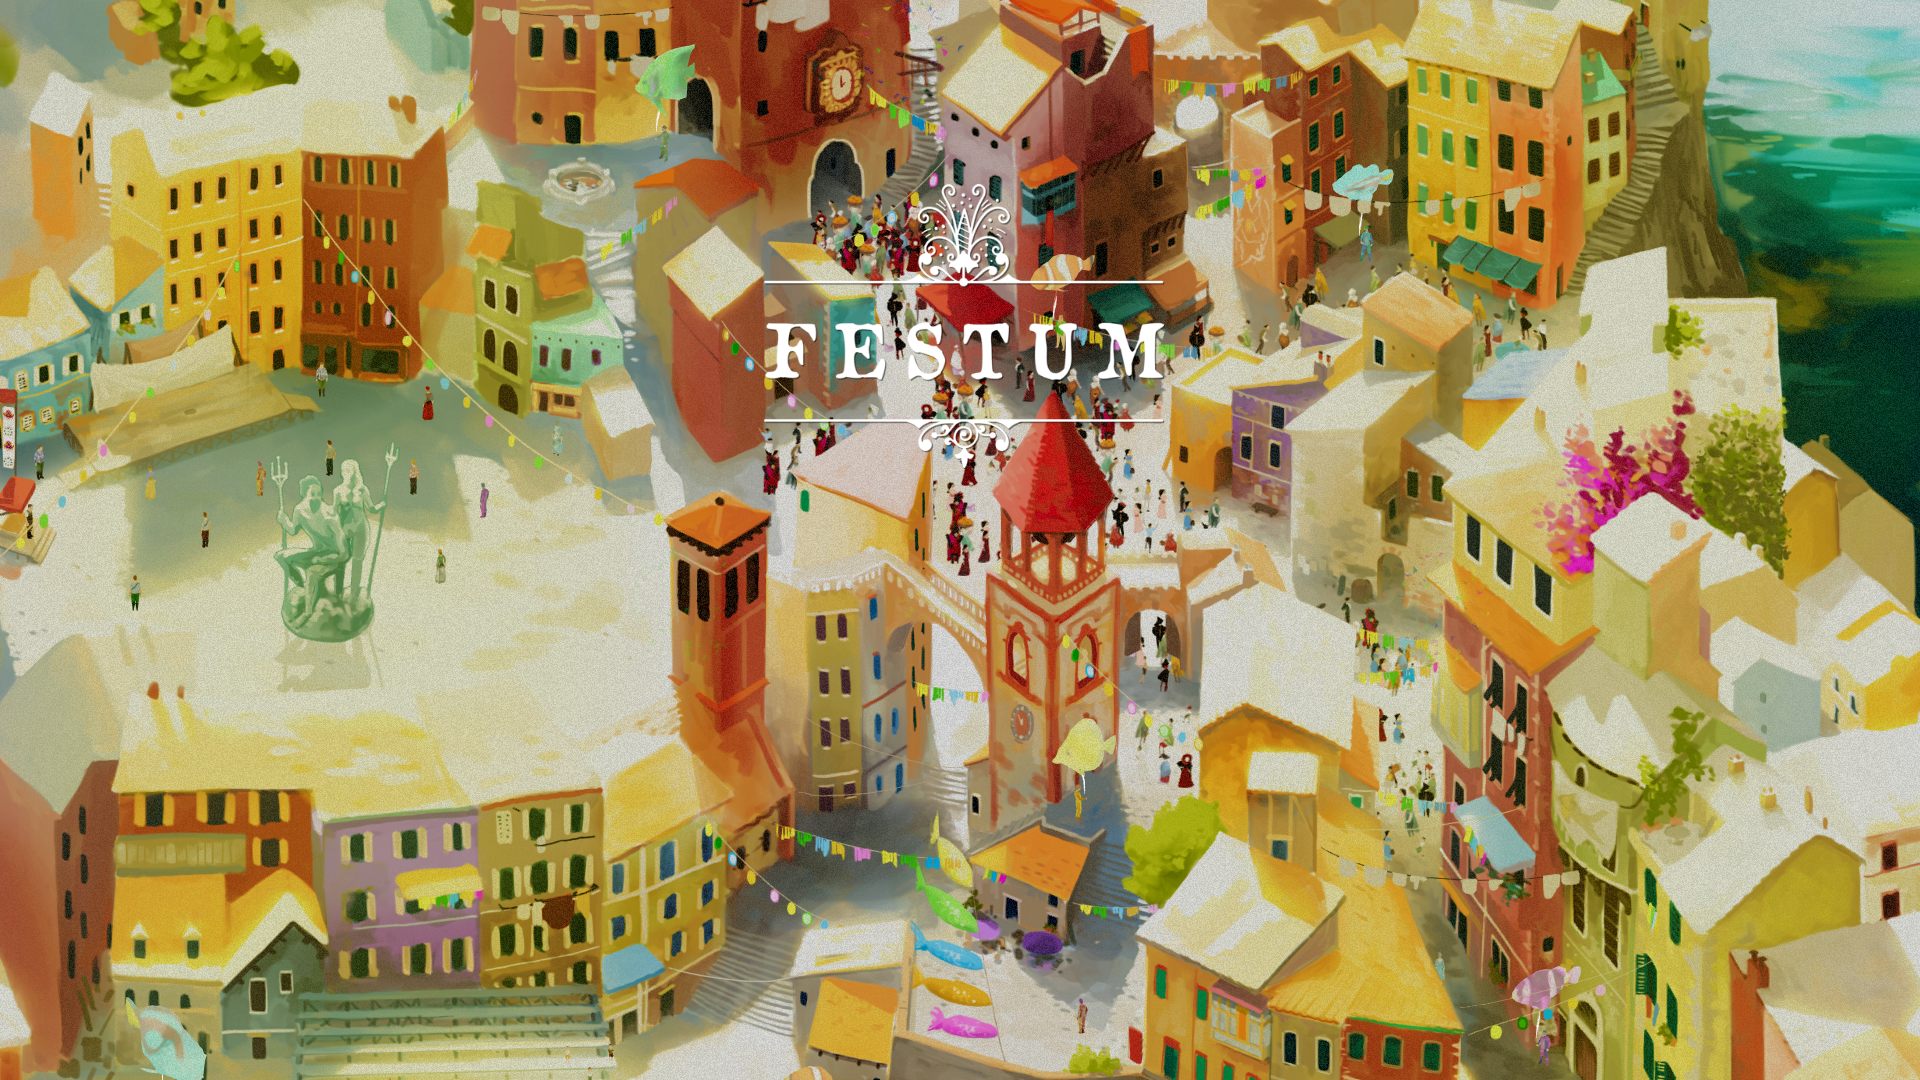 Icon for Festum